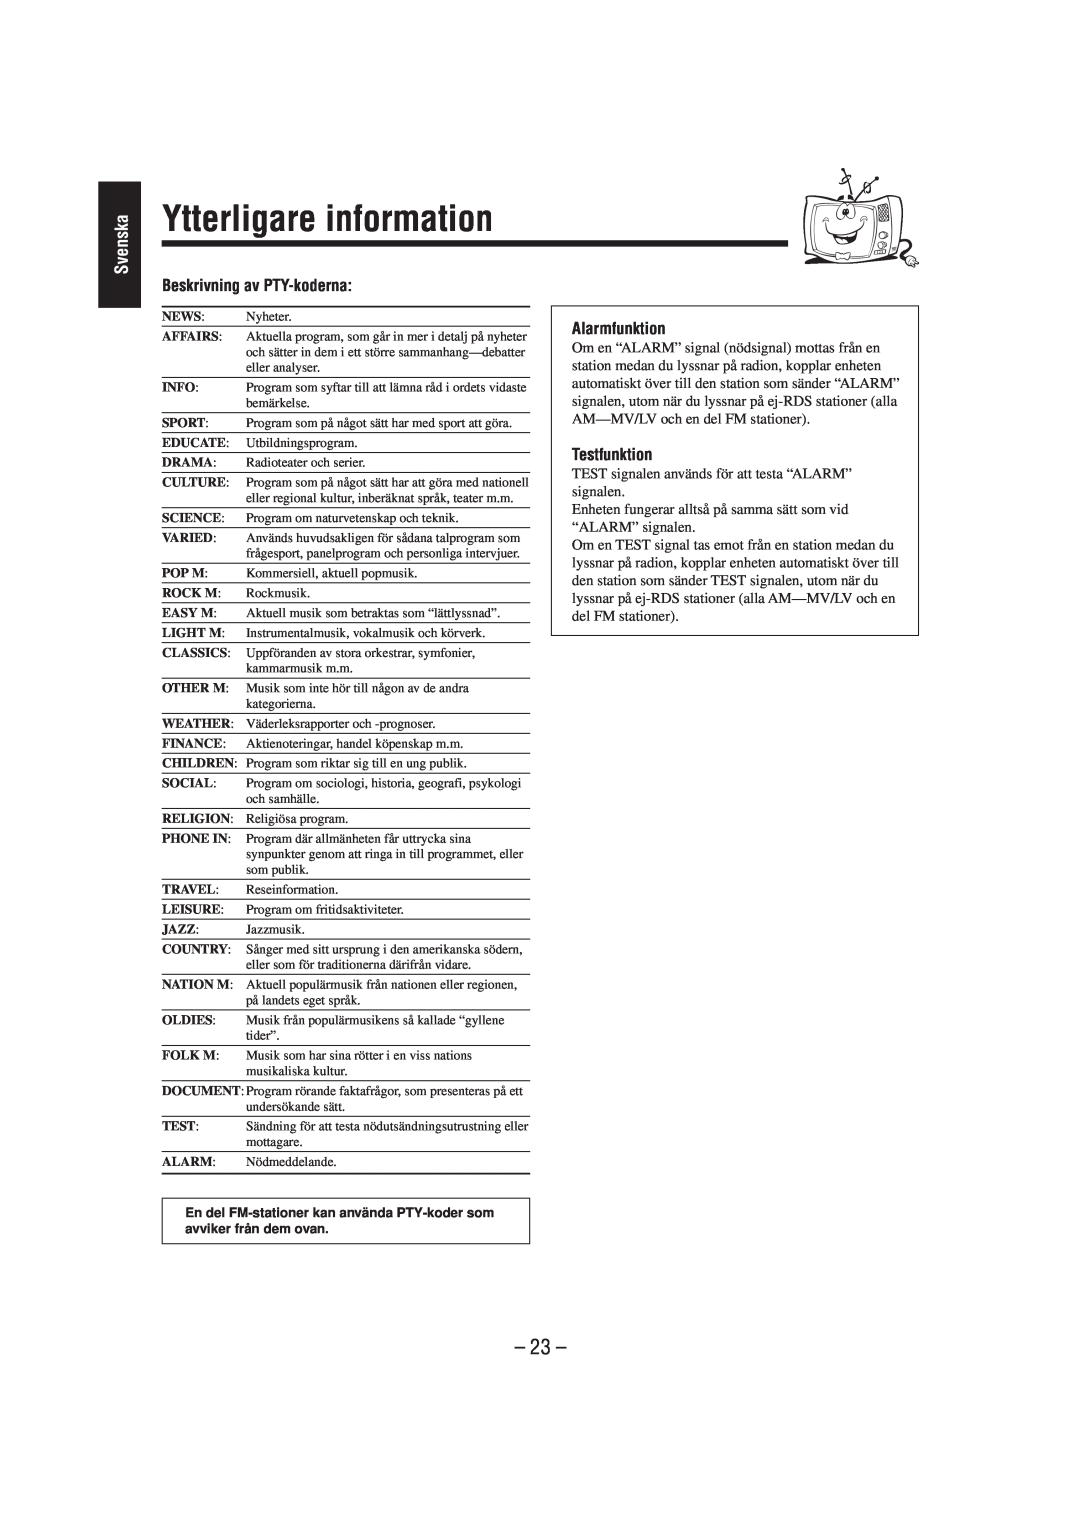 JVC CA-UXL40R, UX-L40R manual Ytterligare information, 23, Beskrivning av PTY-koderna, Alarmfunktion, Testfunktion, Svenska 